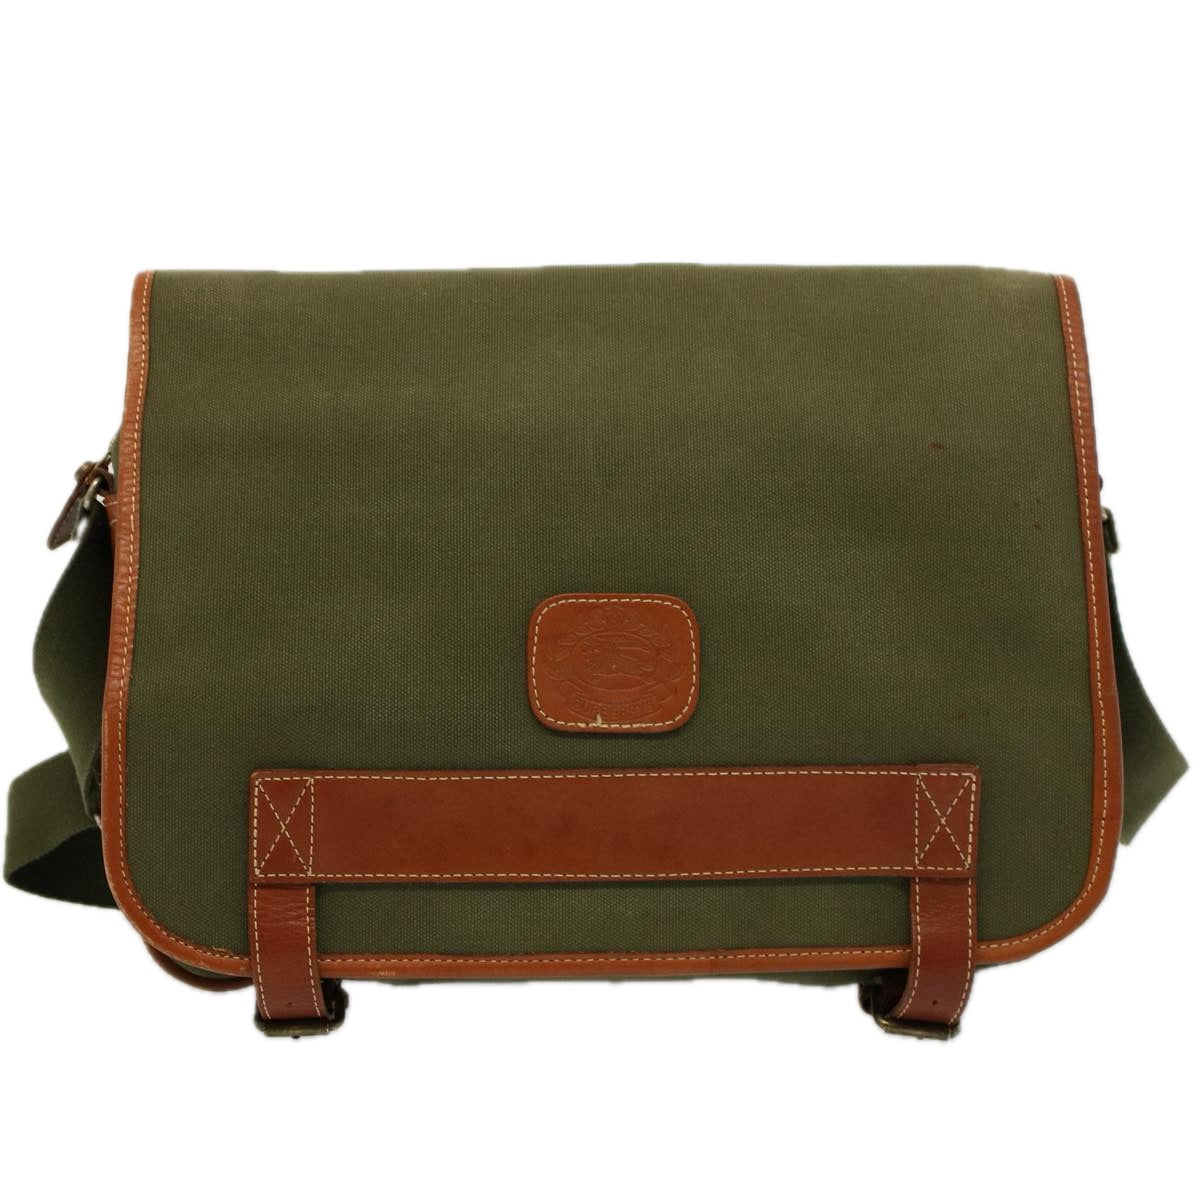 Burberrys Shoulder Bag Canvas Khaki Auth bs9442 - 0